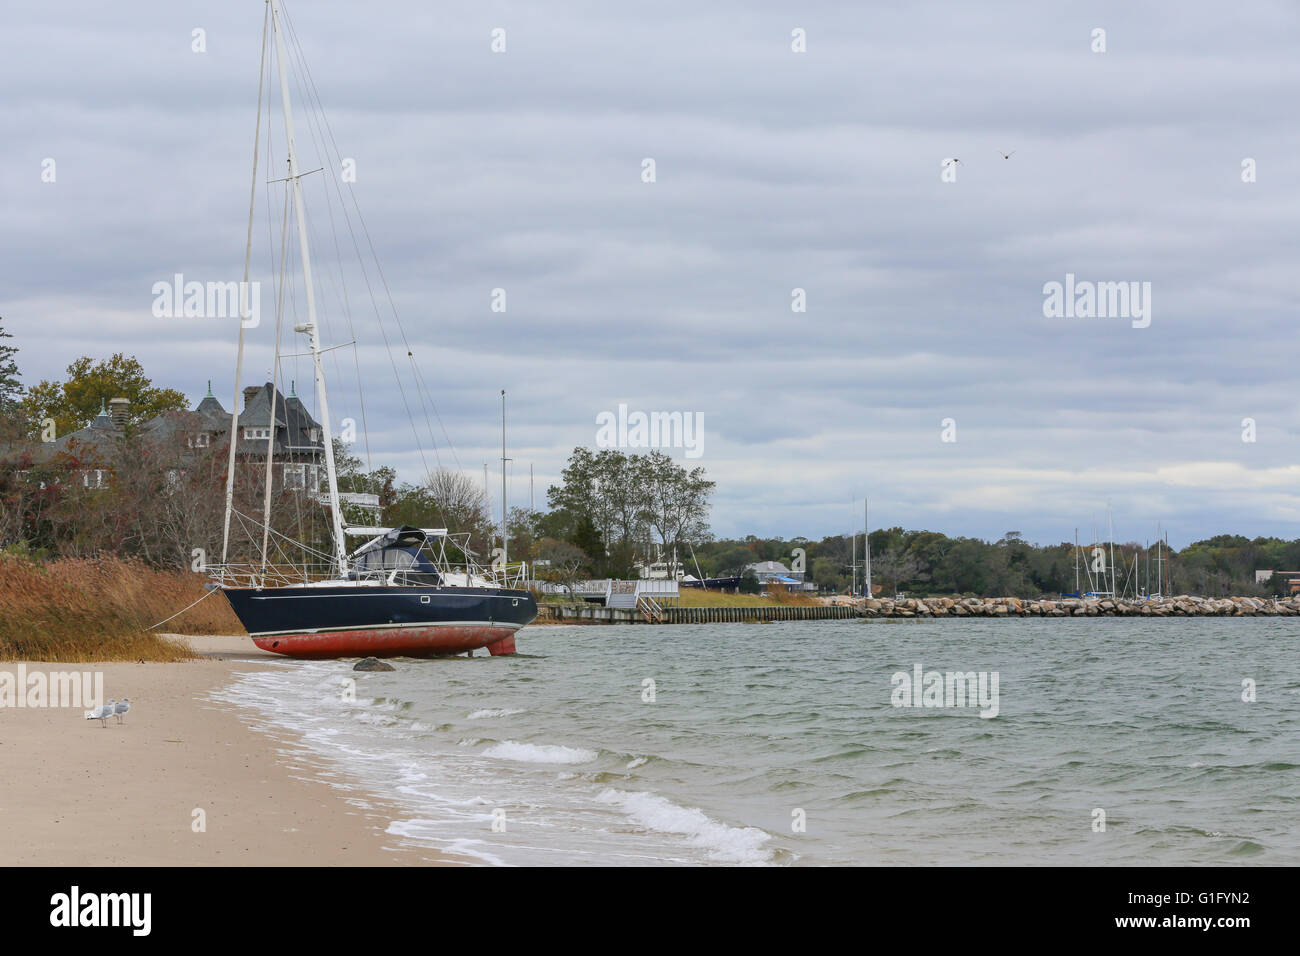 beached sailboat, washed ashore at Haven's Beach, Sag Harbor, NY Stock Photo